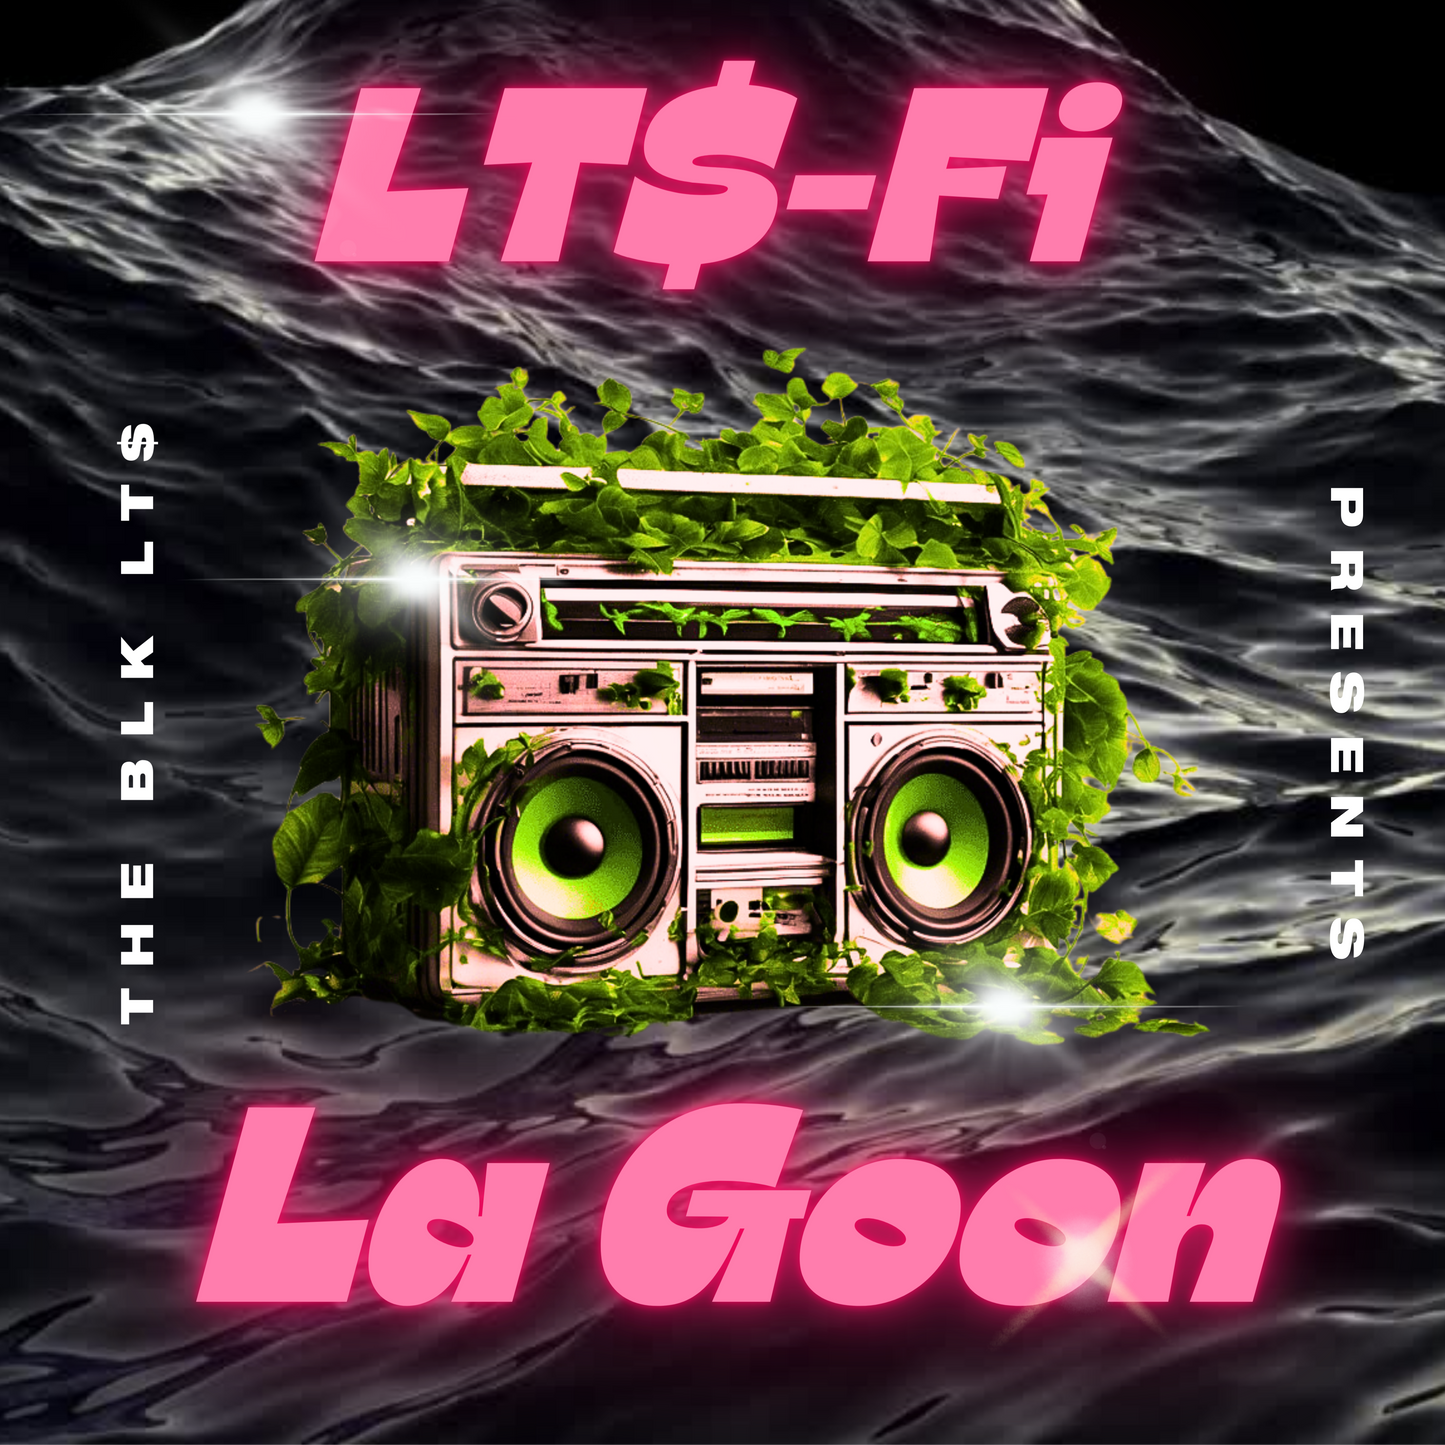 THE BLK LT$ Presents LT$-FI: LA GOON